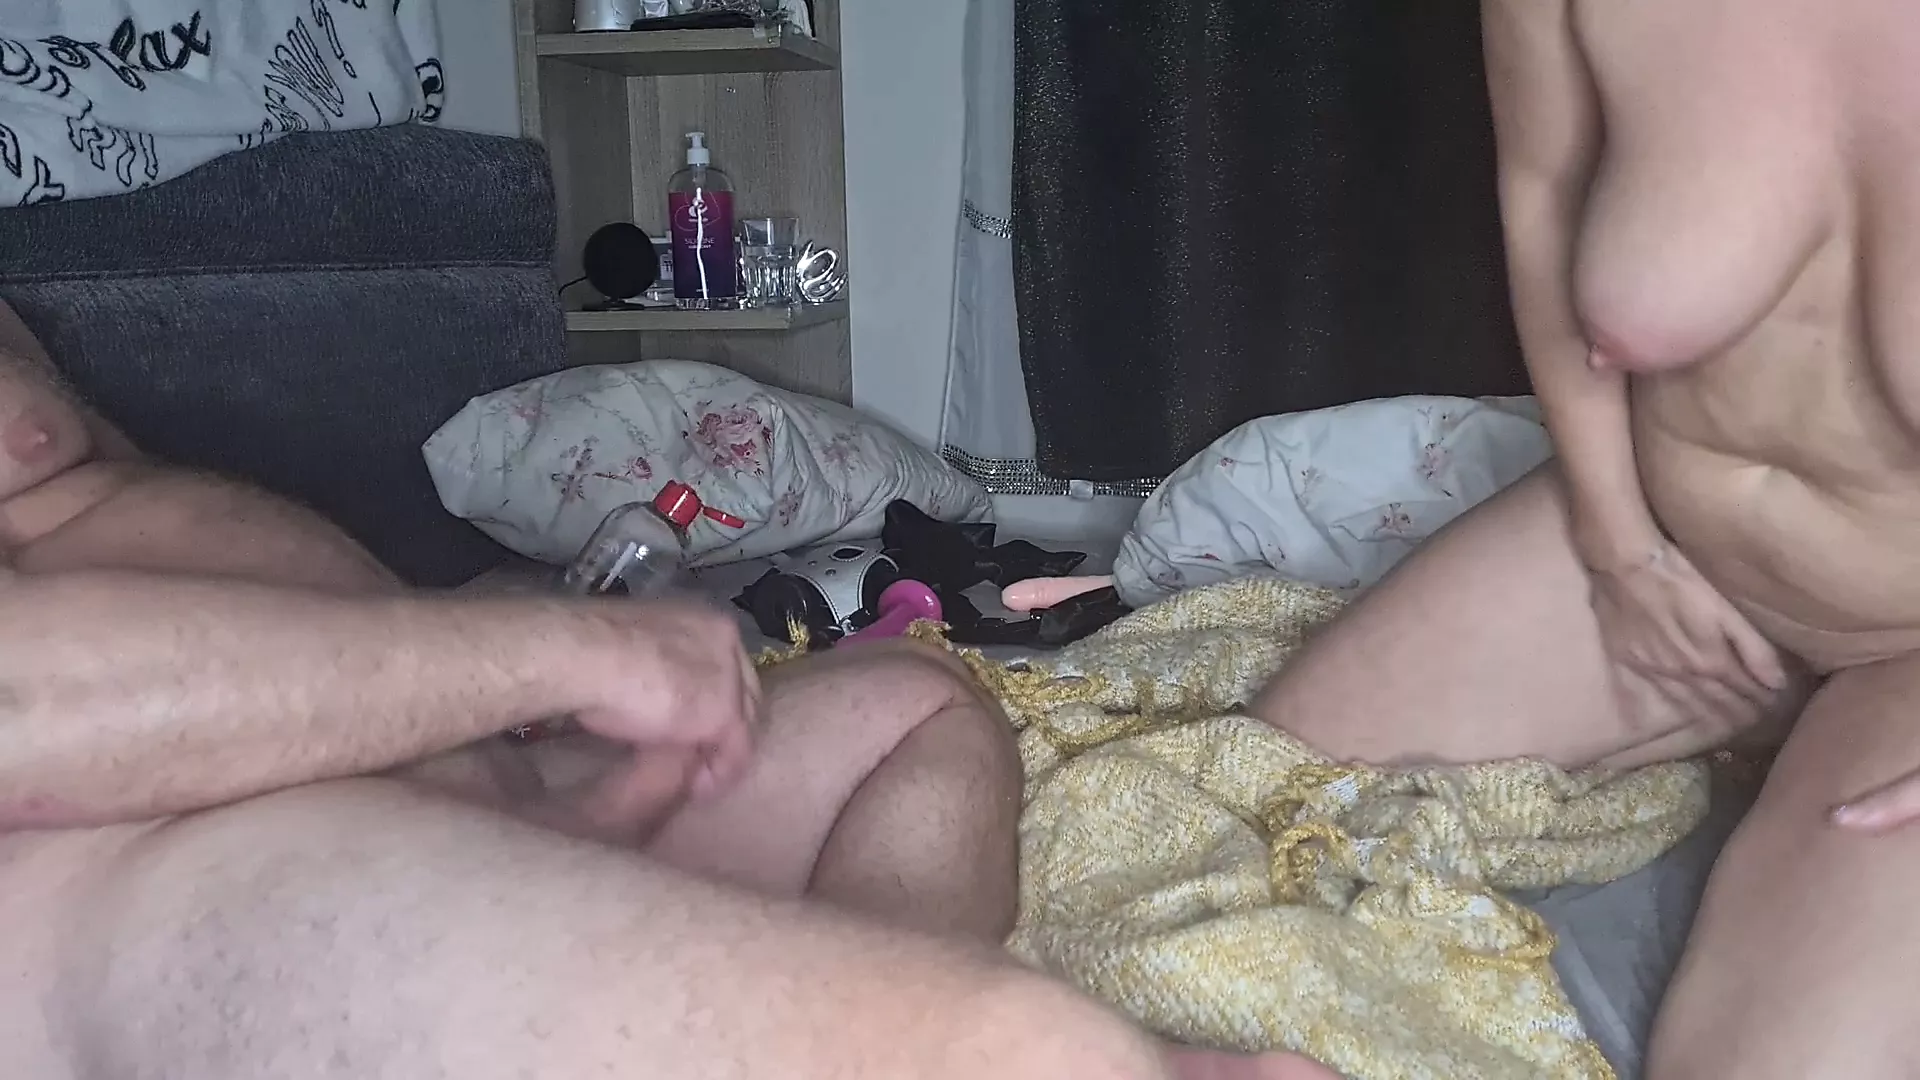 Hardcore ass licking, horny wife enjoying ass fetish watch online